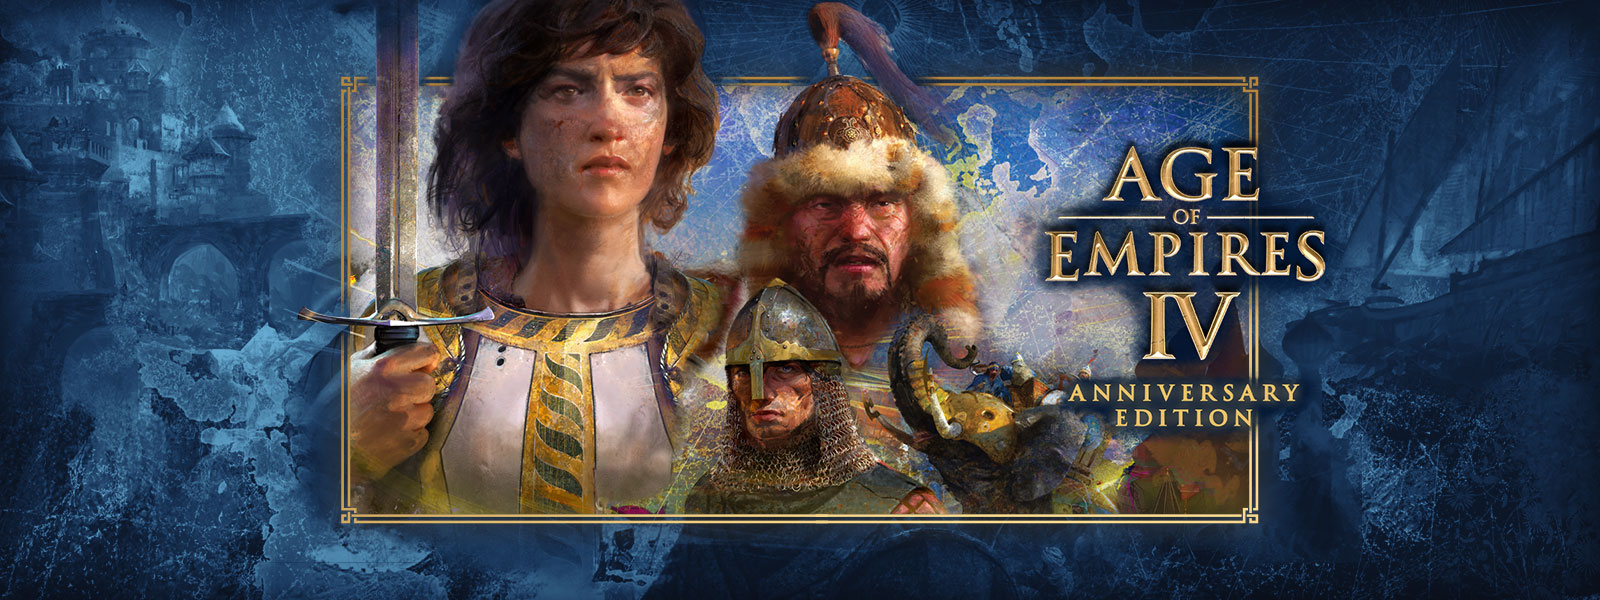 Age of Empires IV: Anniversary Edition. Tre karaktärer med krigsscener och bepansrade elefanter runt omkring dem.